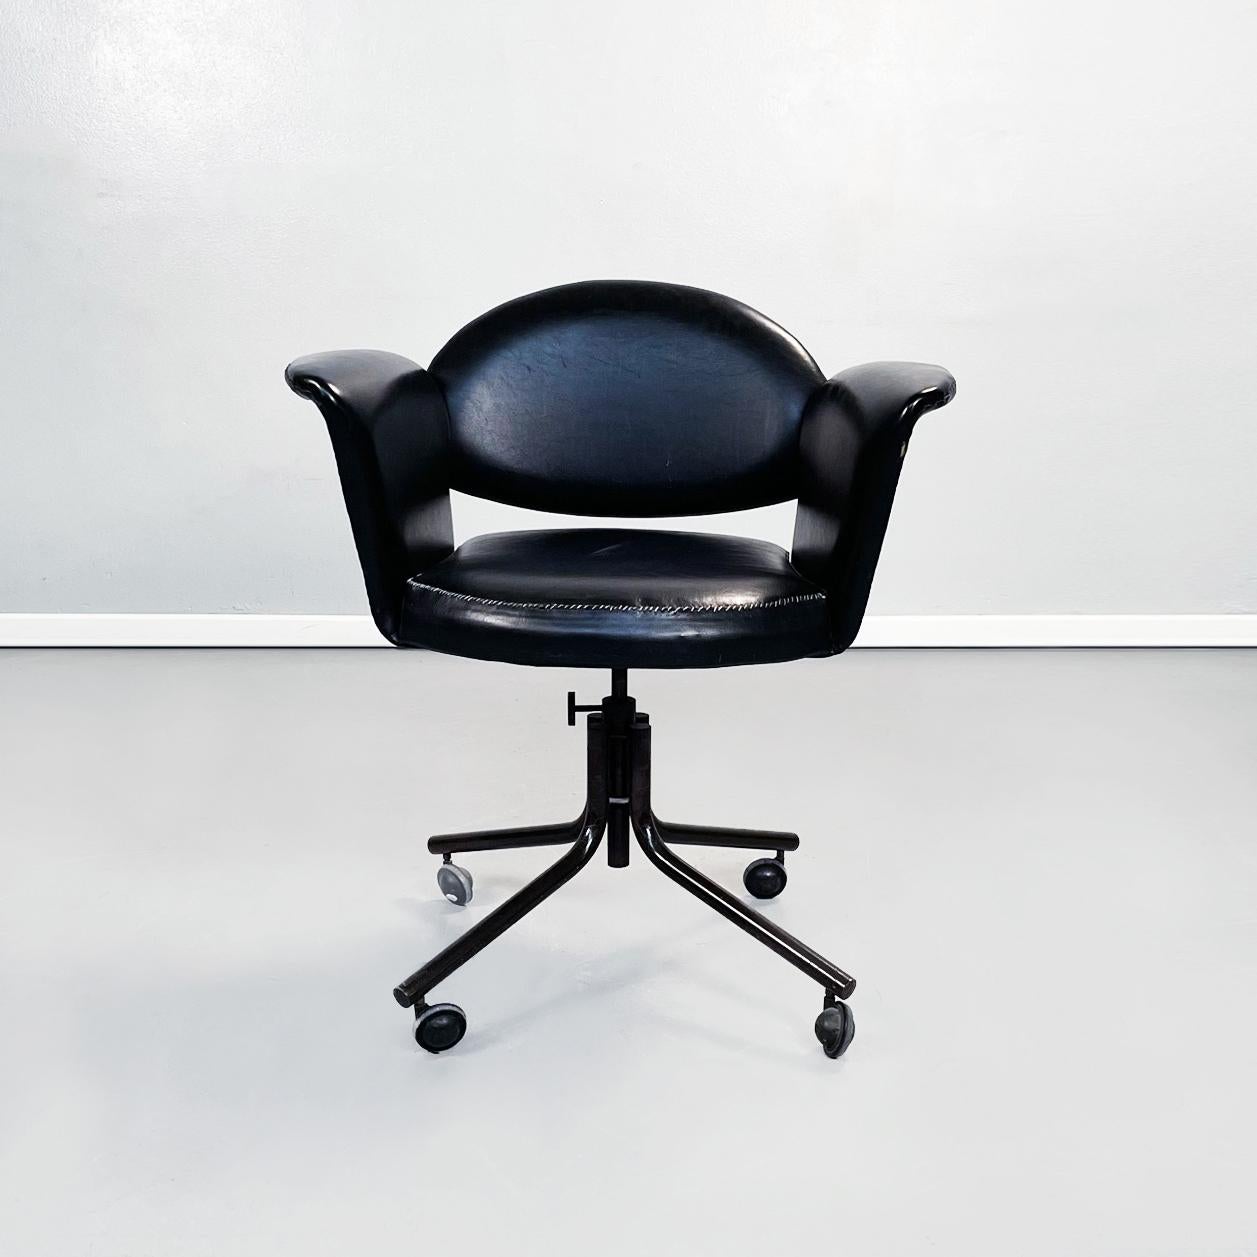 Fauteuil italien moderne du milieu du siècle en cuir noir et métal noir, 1970
Fauteuil en cuir noir avec assise ronde rembourrée. Le dossier rembourré a la forme d'un demi-cercle. Sur les côtés, il dispose de deux accoudoirs incurvés et légèrement